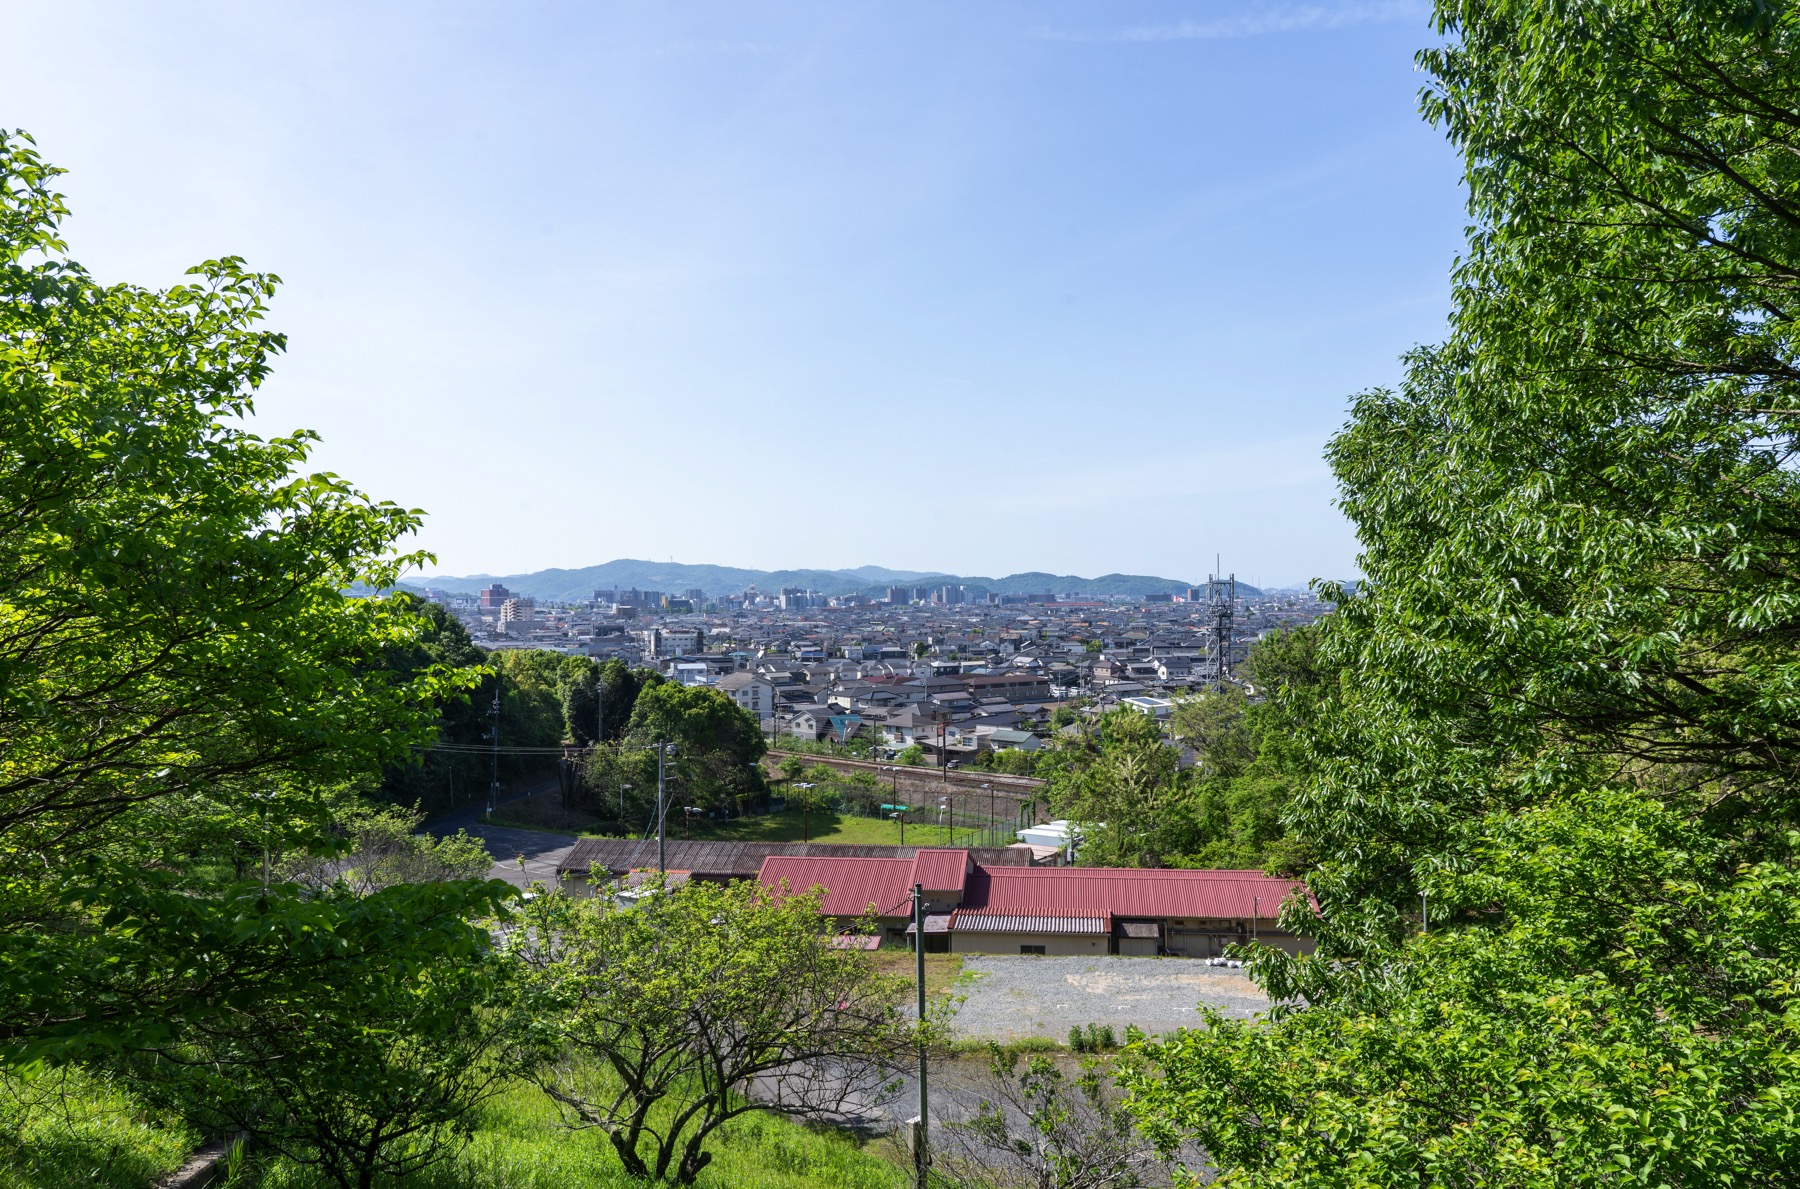 The Cityscape of Kurashiki, Okayama